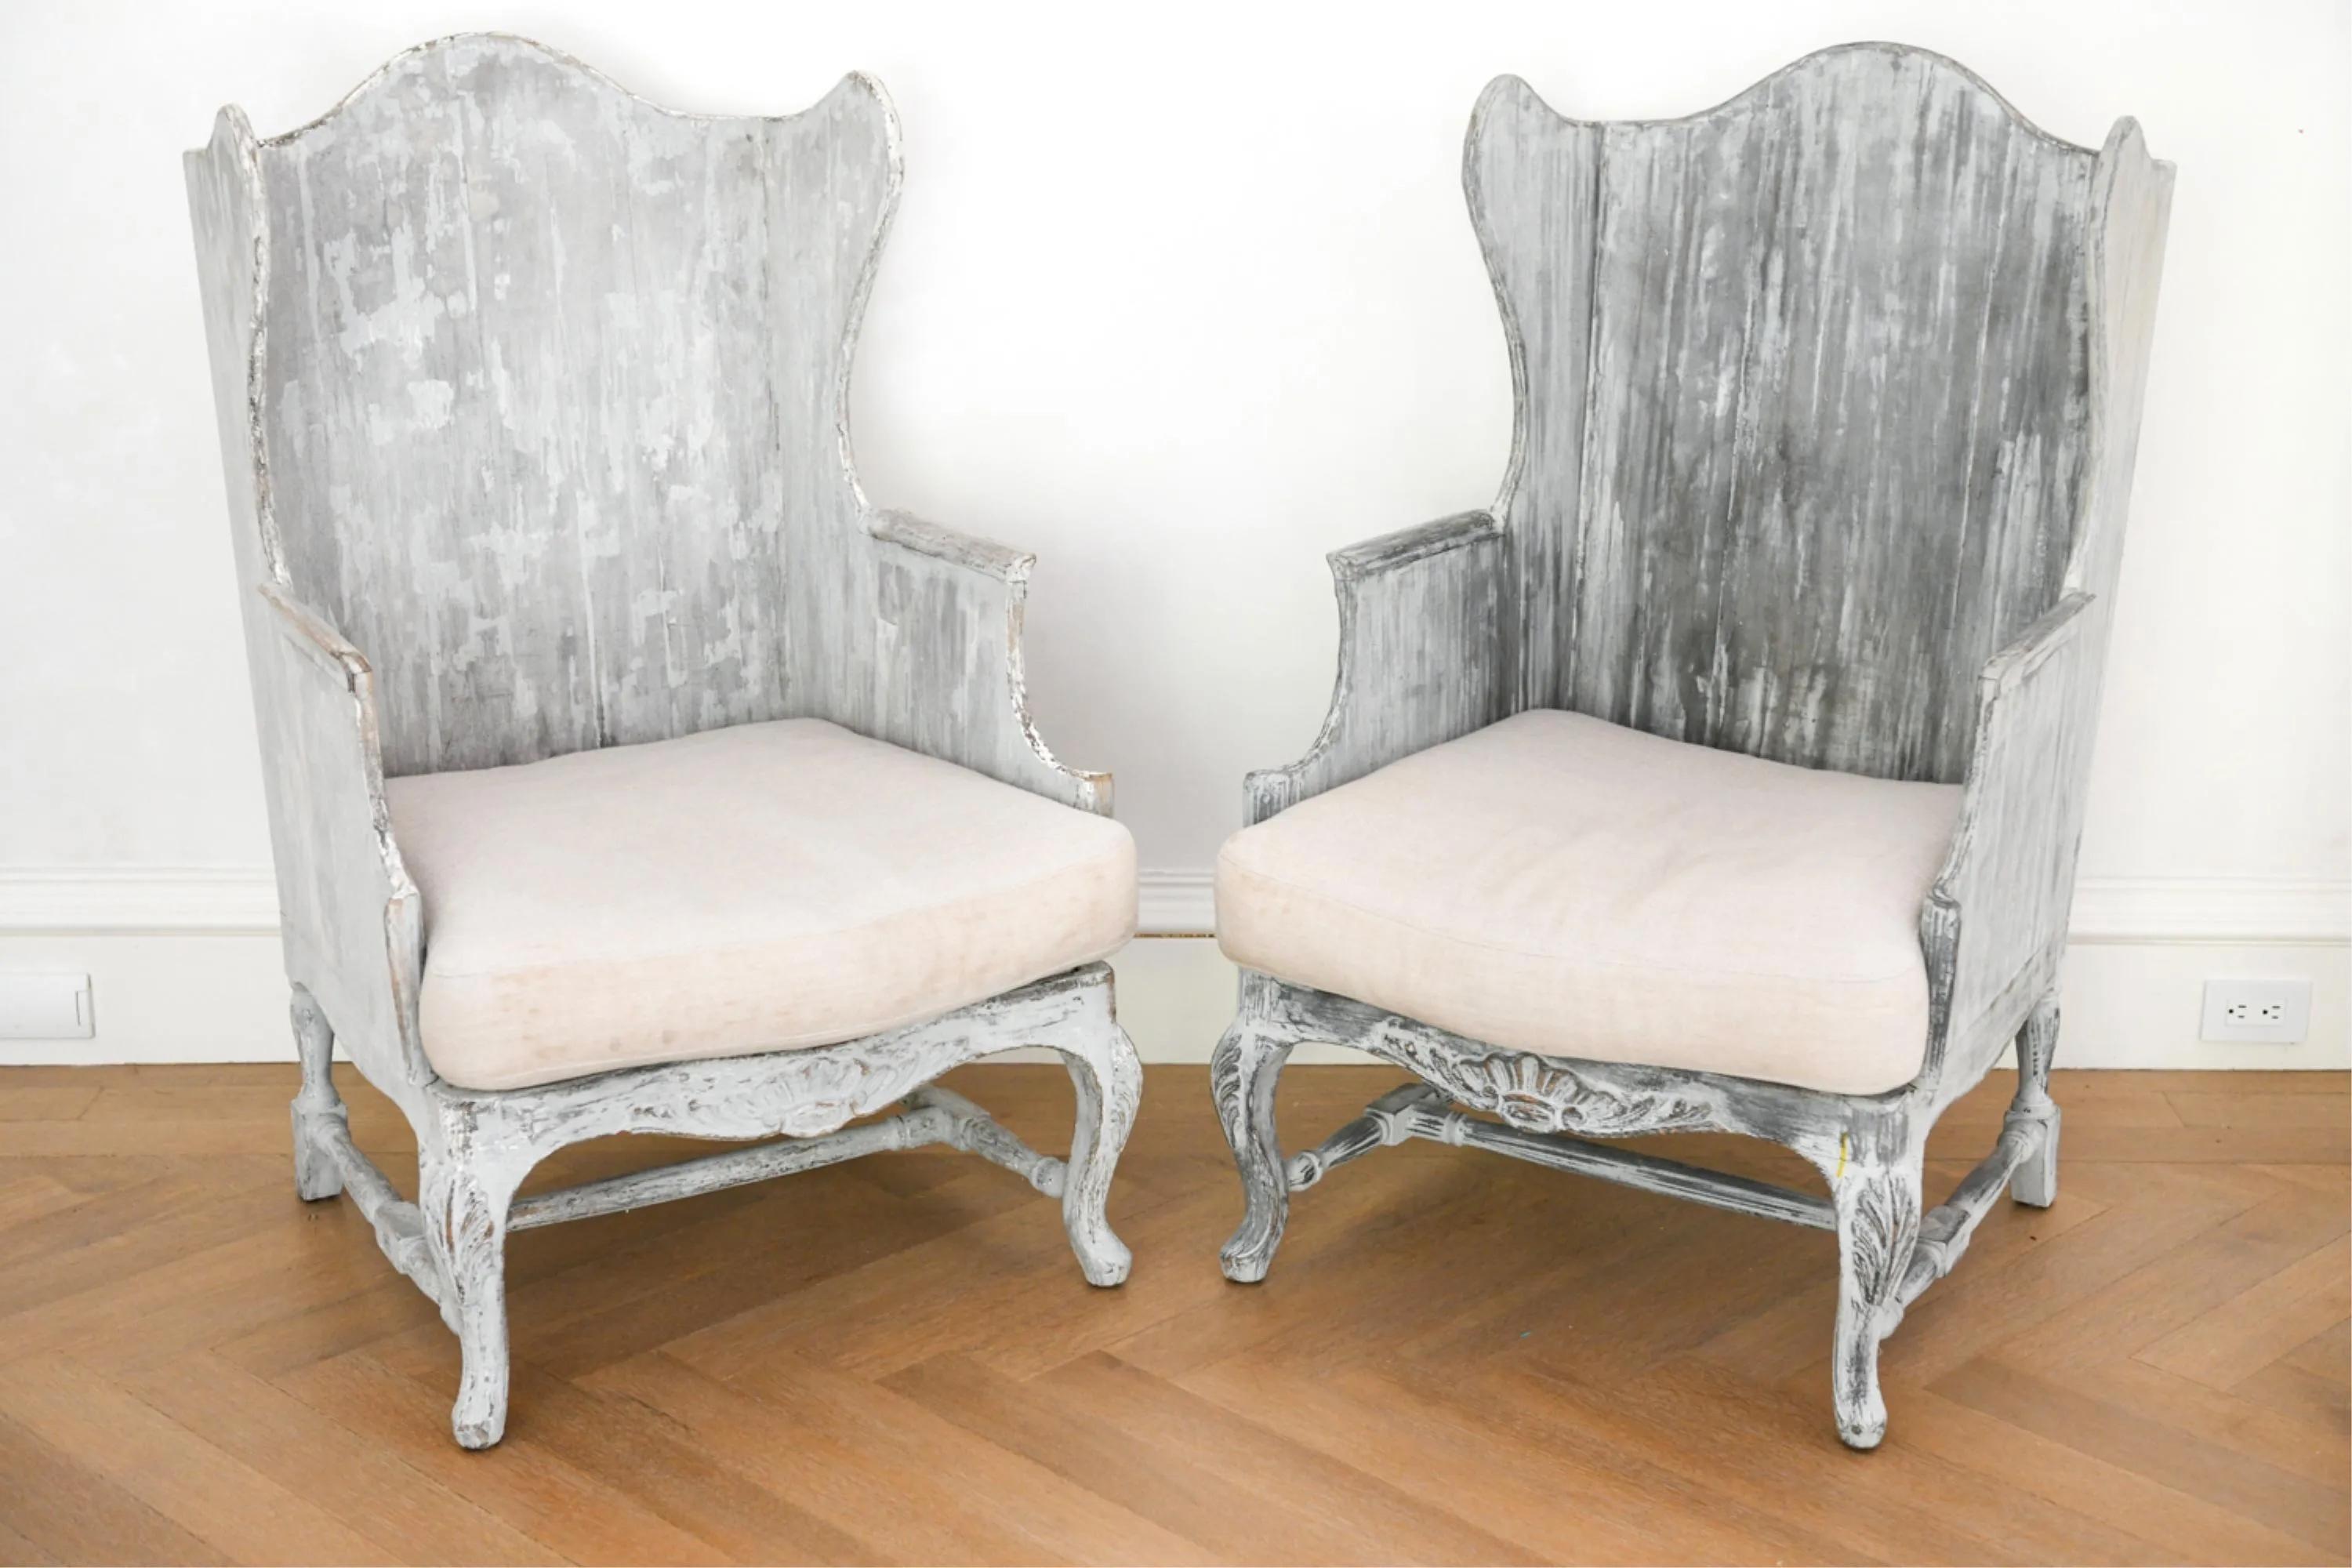 Paire de fauteuils impressionnants, très élégants et uniques, en bois peint italien, à dossier en aile, qui apporteront de la prestance à n'importe quelle pièce. Les chaises sont dotées d'un cadre en bois et d'un coussin amovible. Le cadre en bois